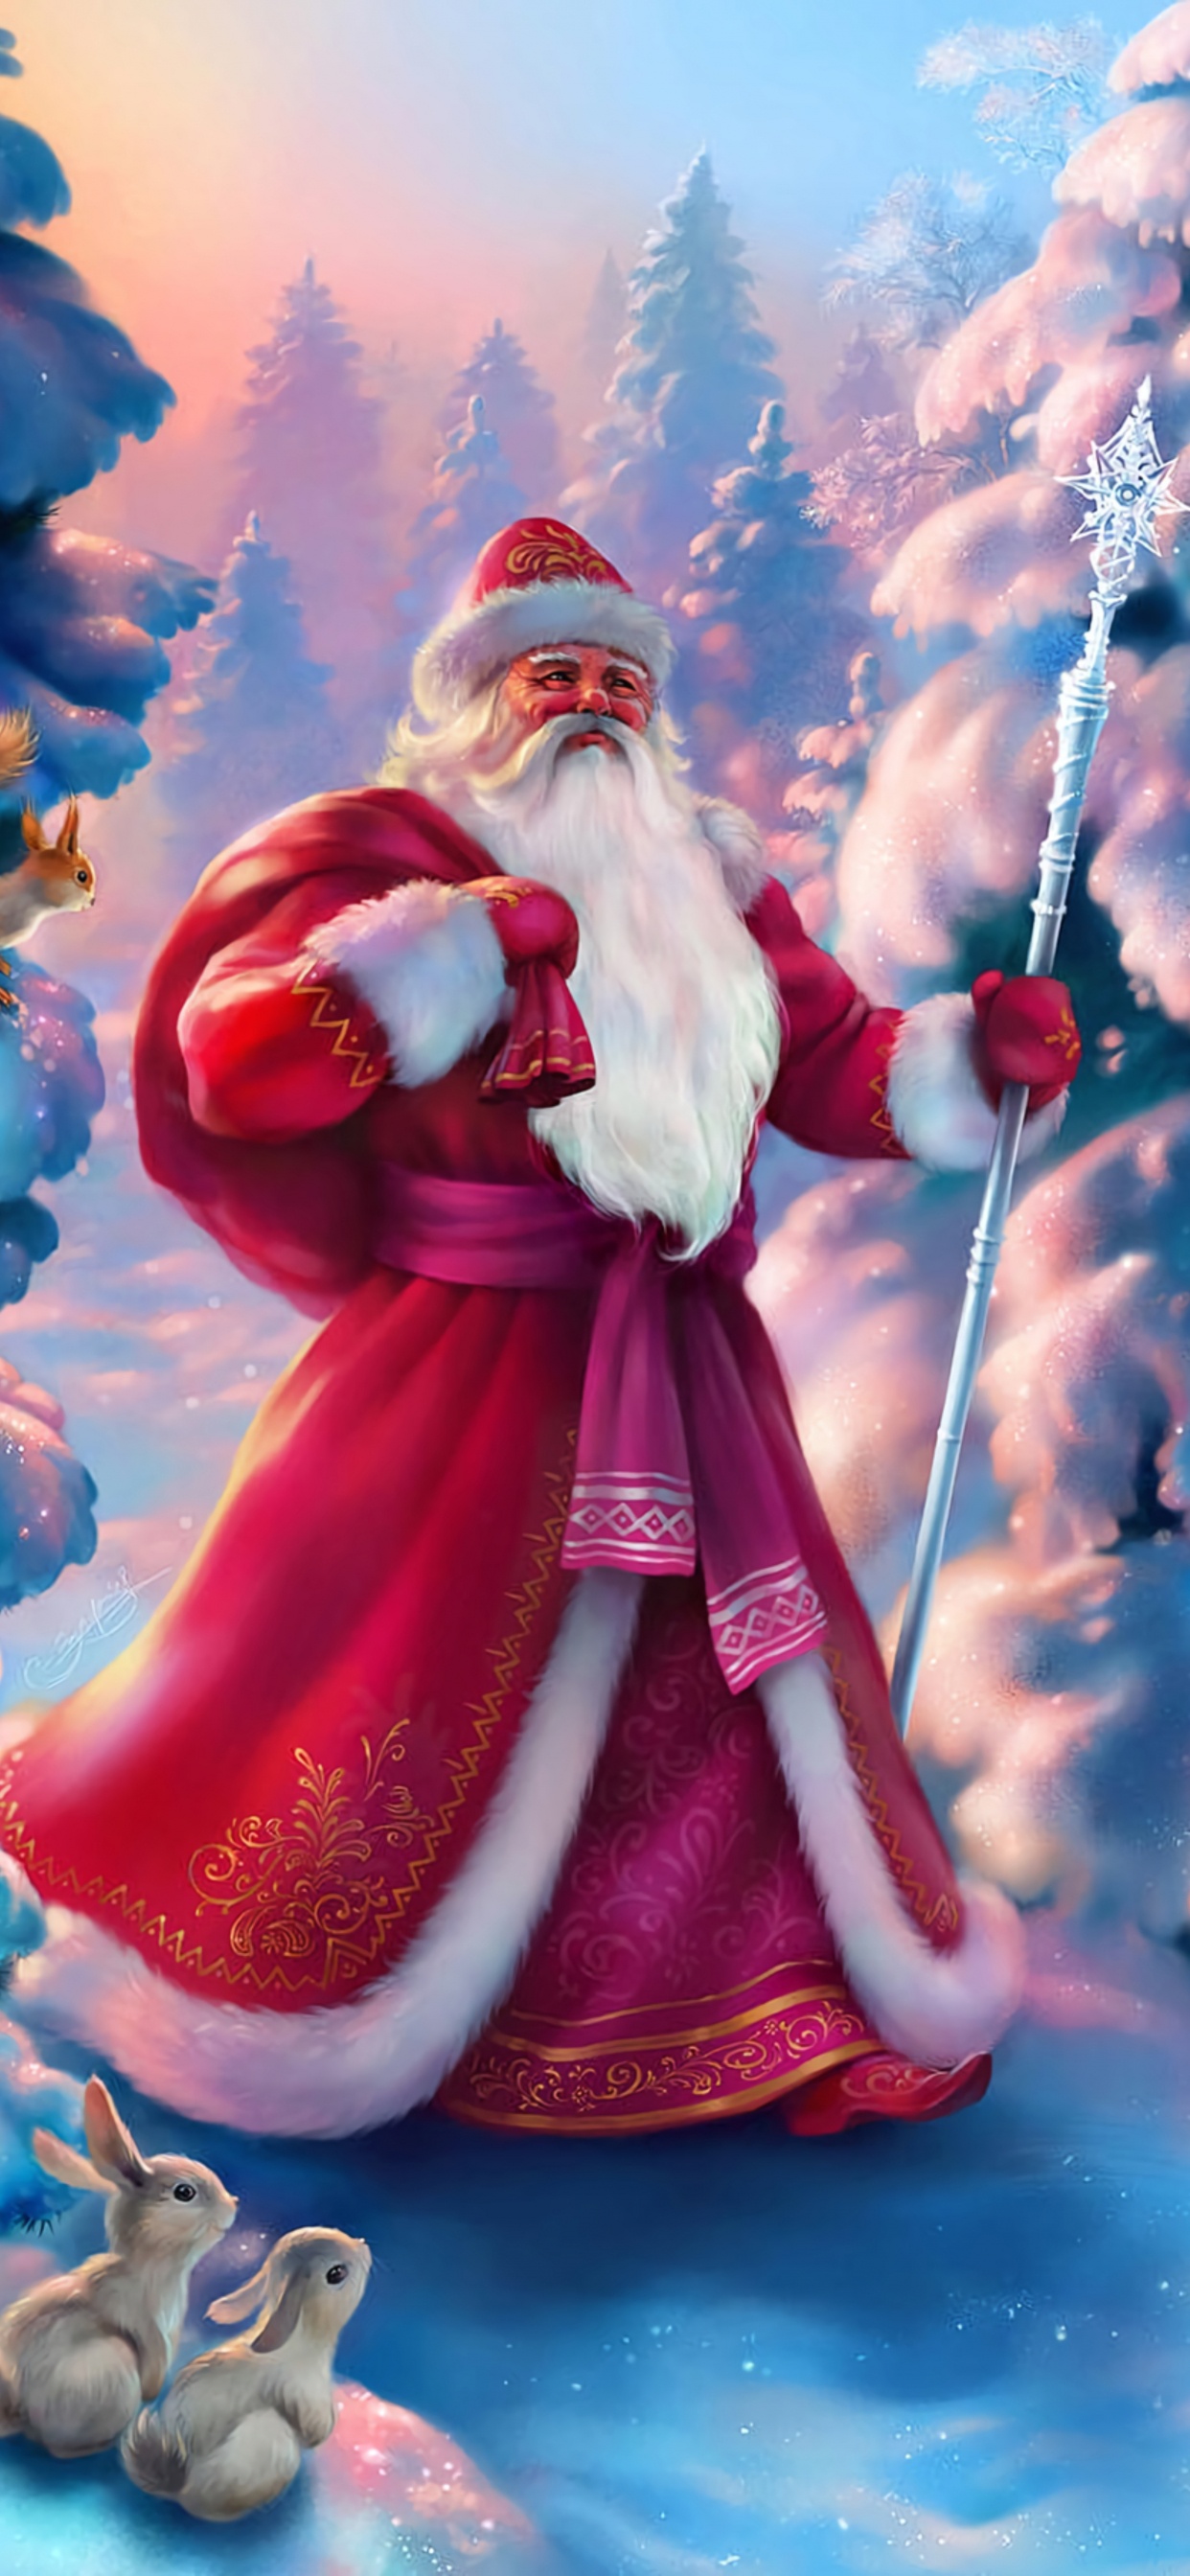 Weihnachtsmann, Ded Moroz, Weihnachten, Animation, Pink. Wallpaper in 1242x2688 Resolution